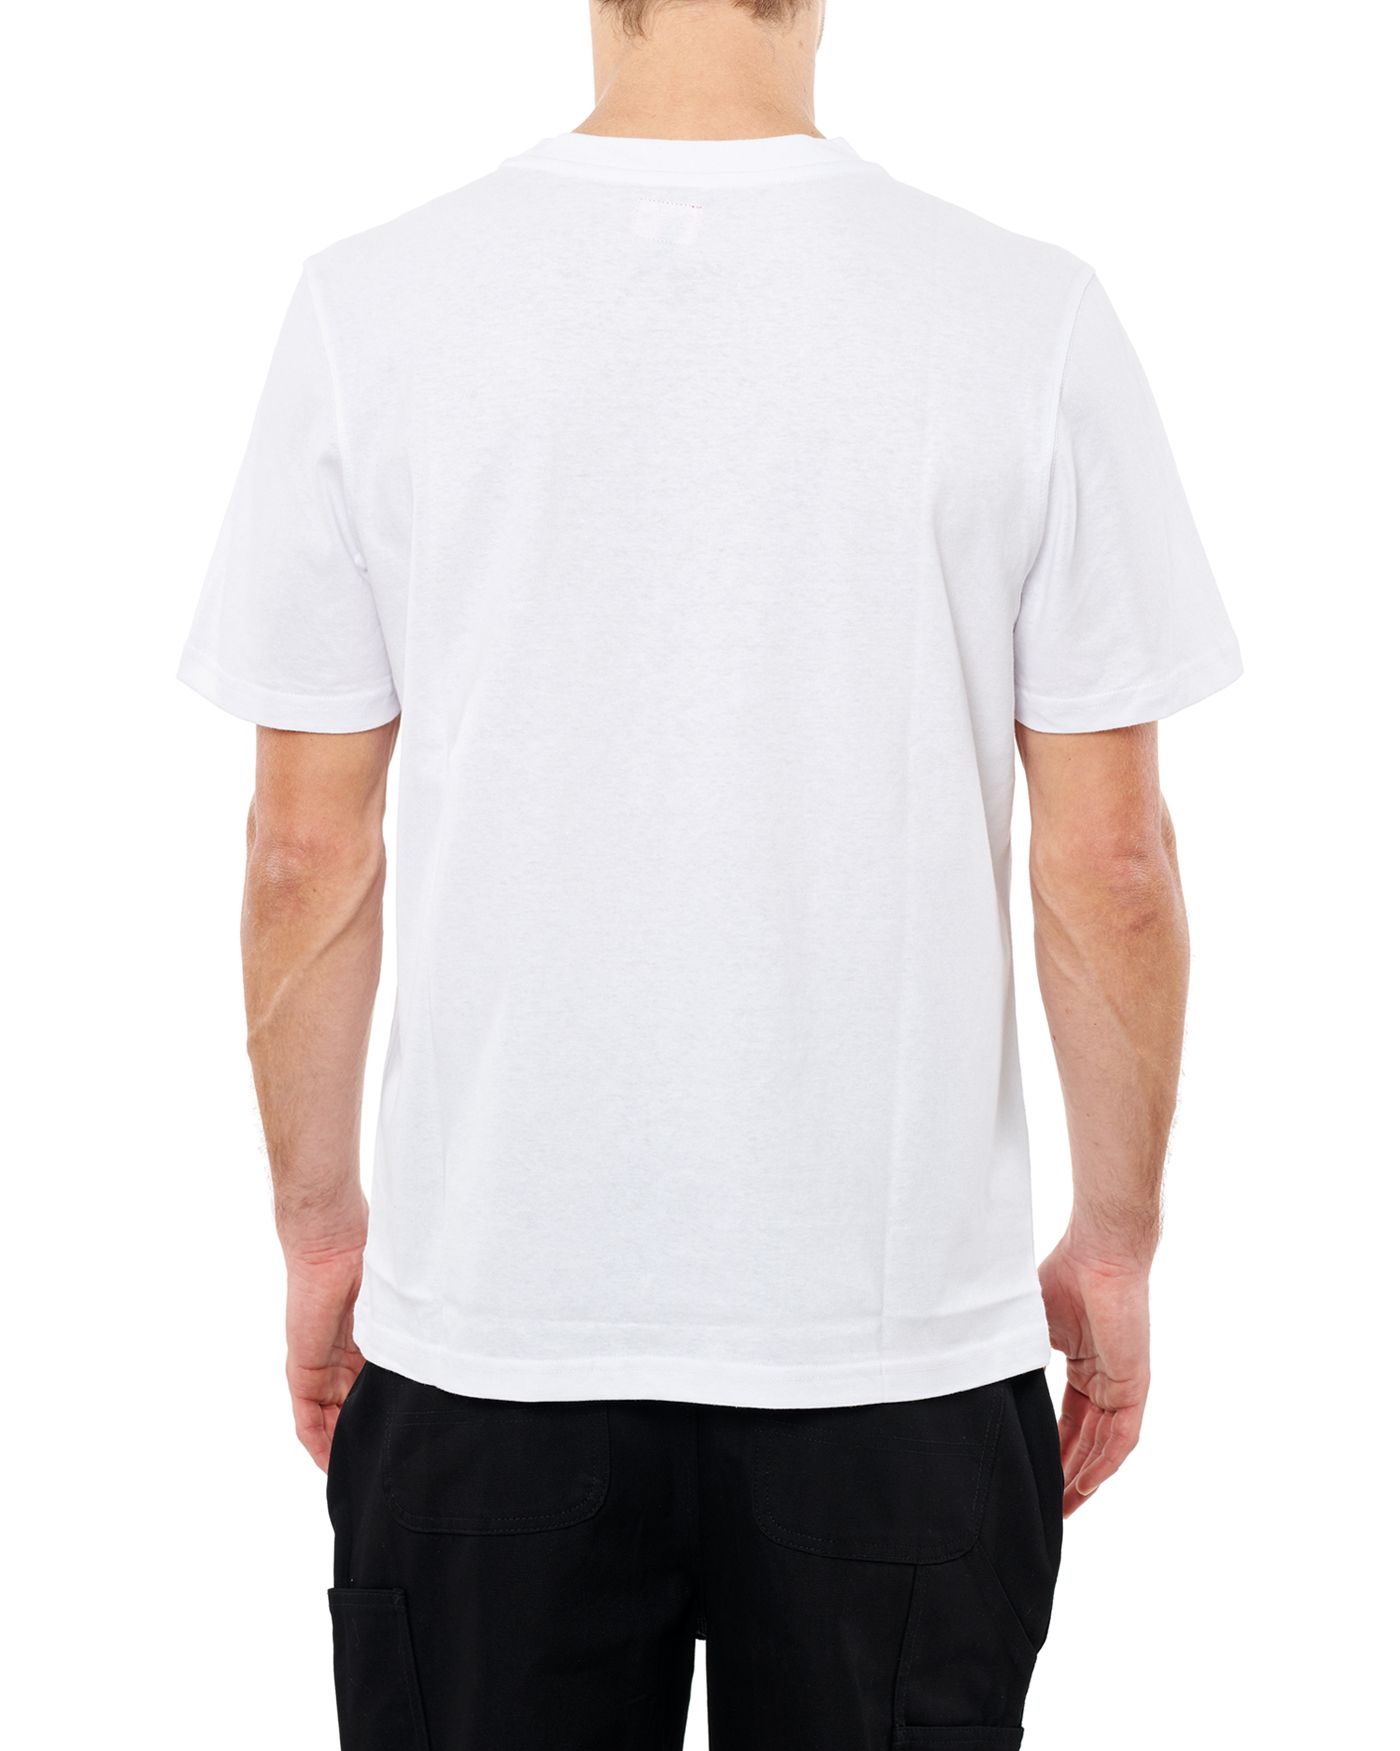 Photo of Pony Boy S/S T-shirt, White